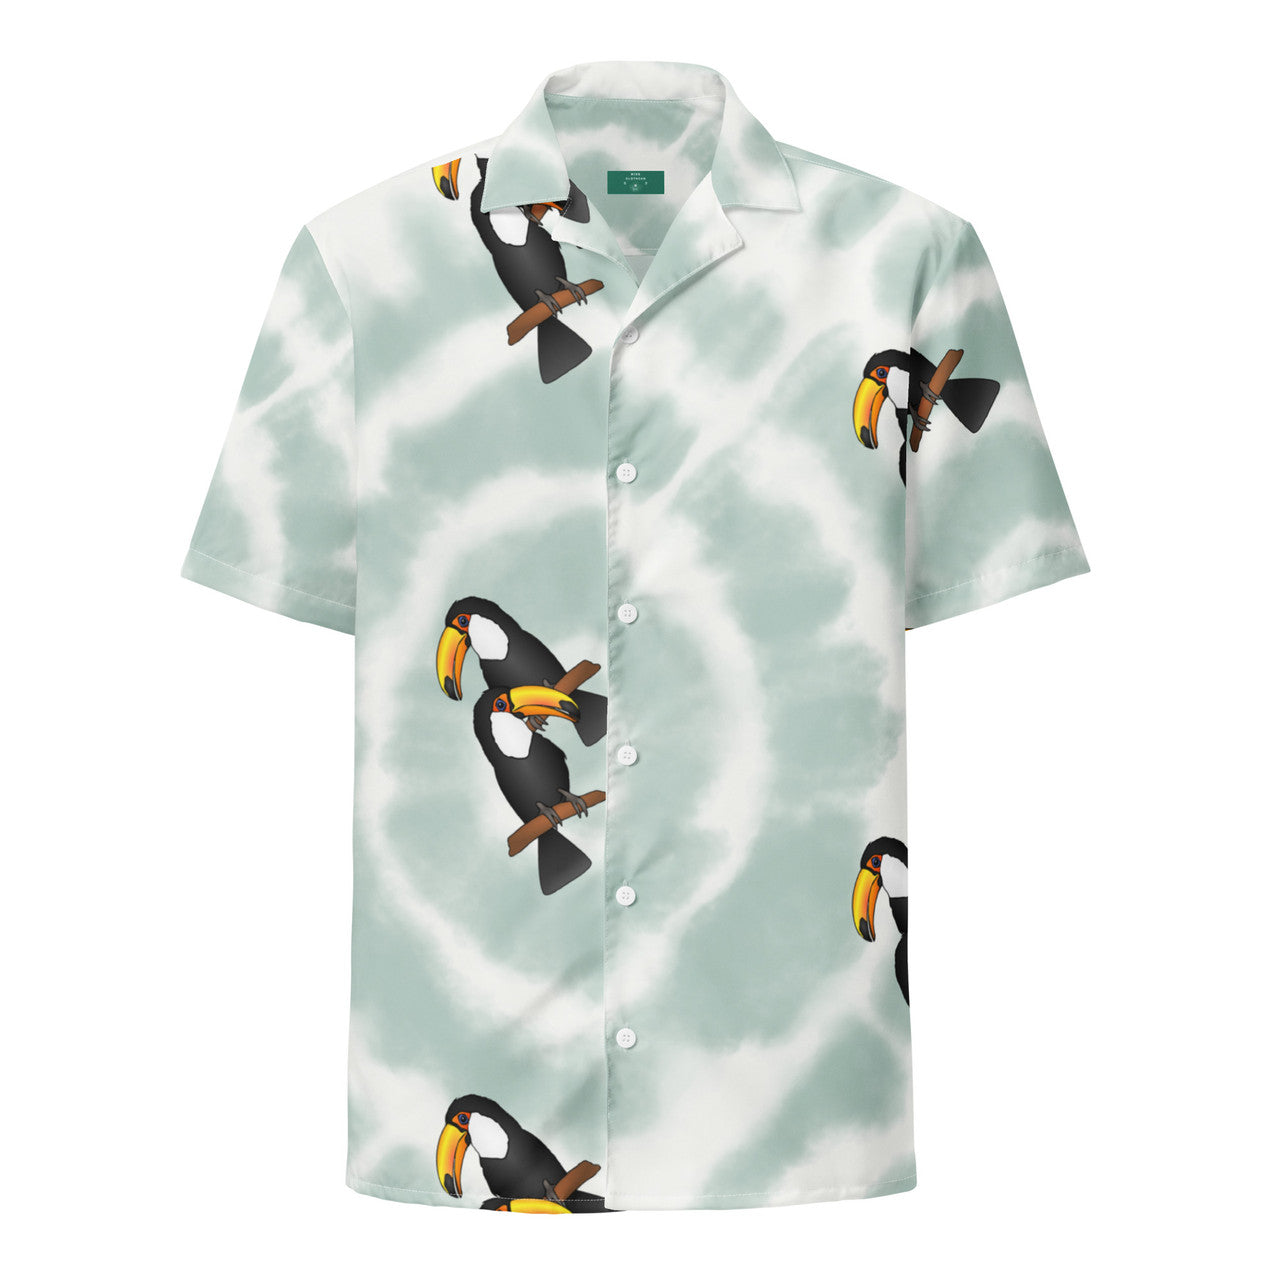 Toucan Bird KiSS Unisex button shirt - Tyler Durden inspired style Brad Pitt Fight Club